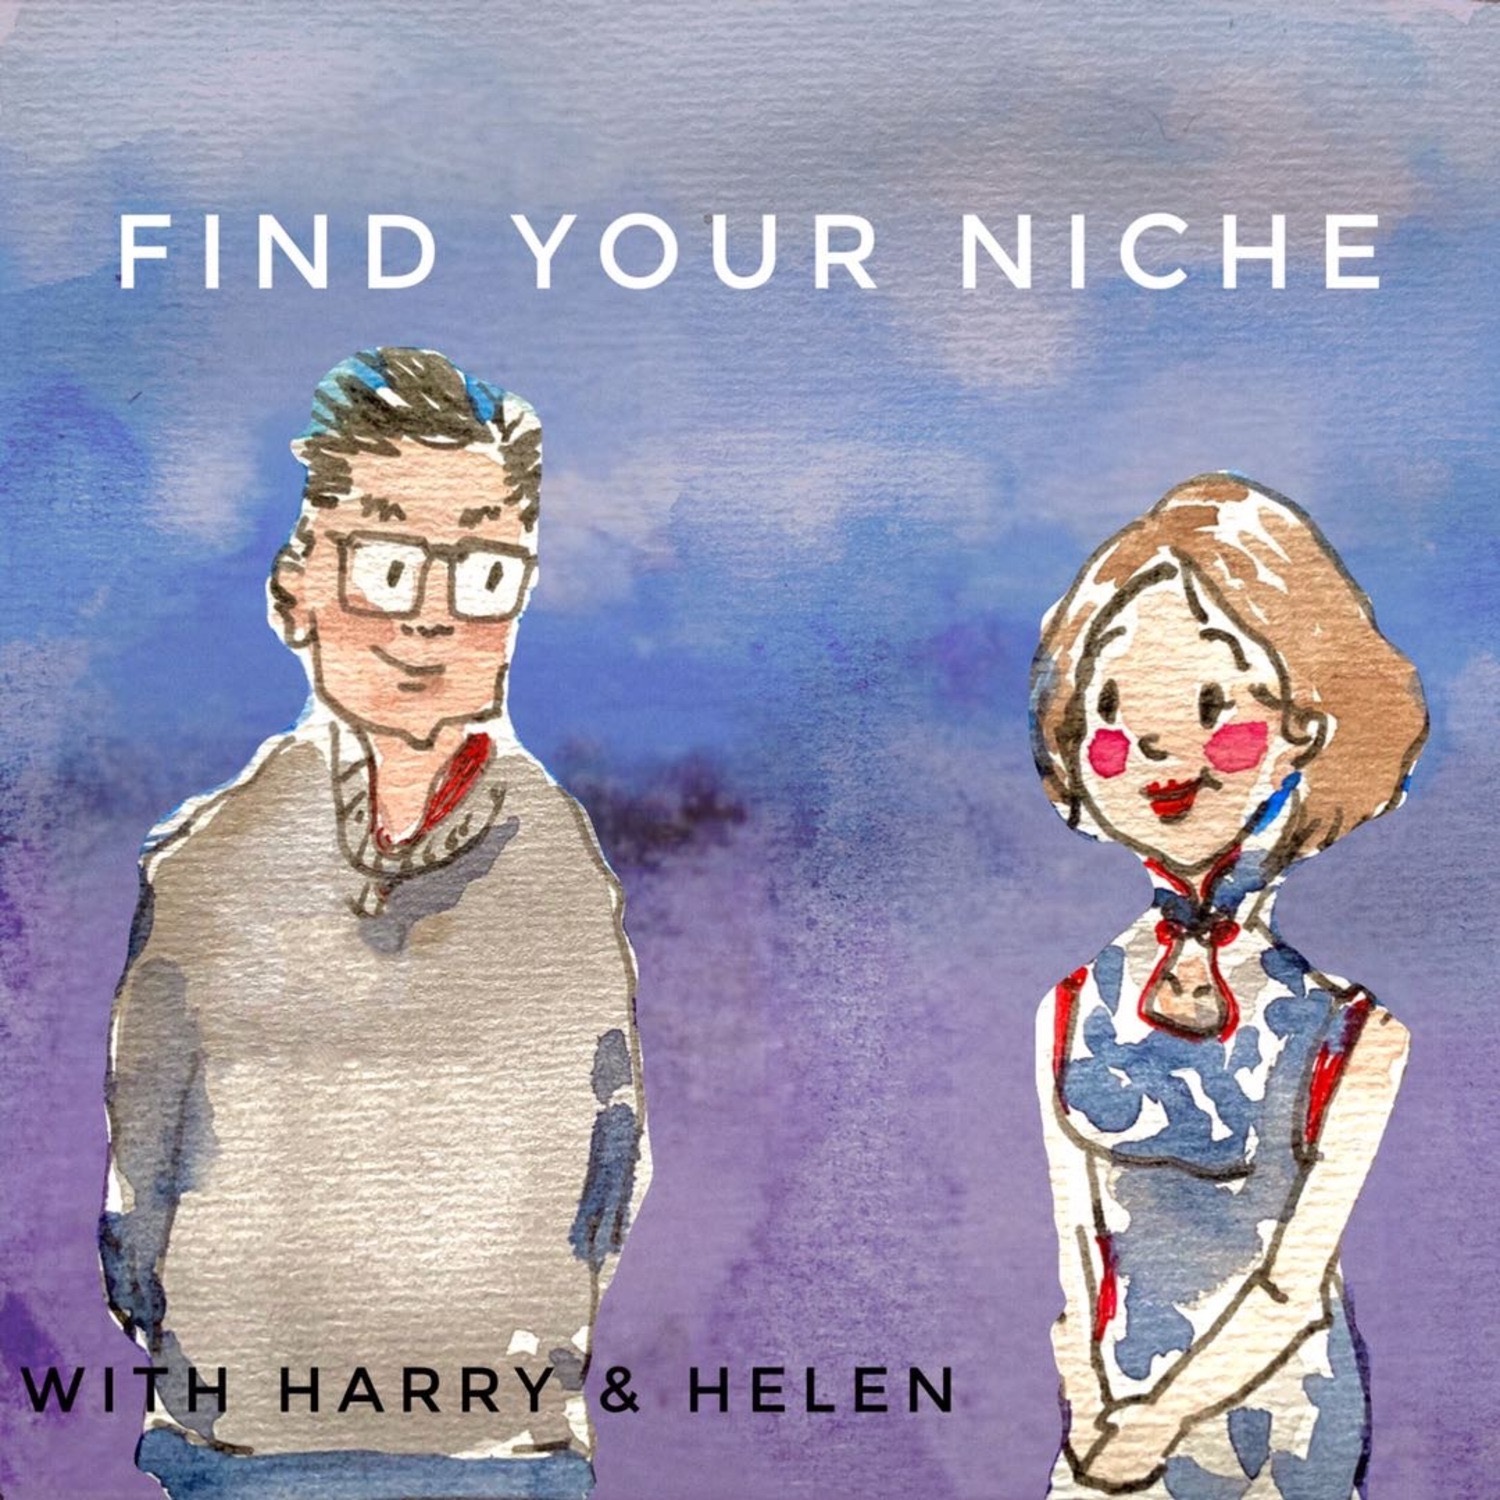 Find your Niche